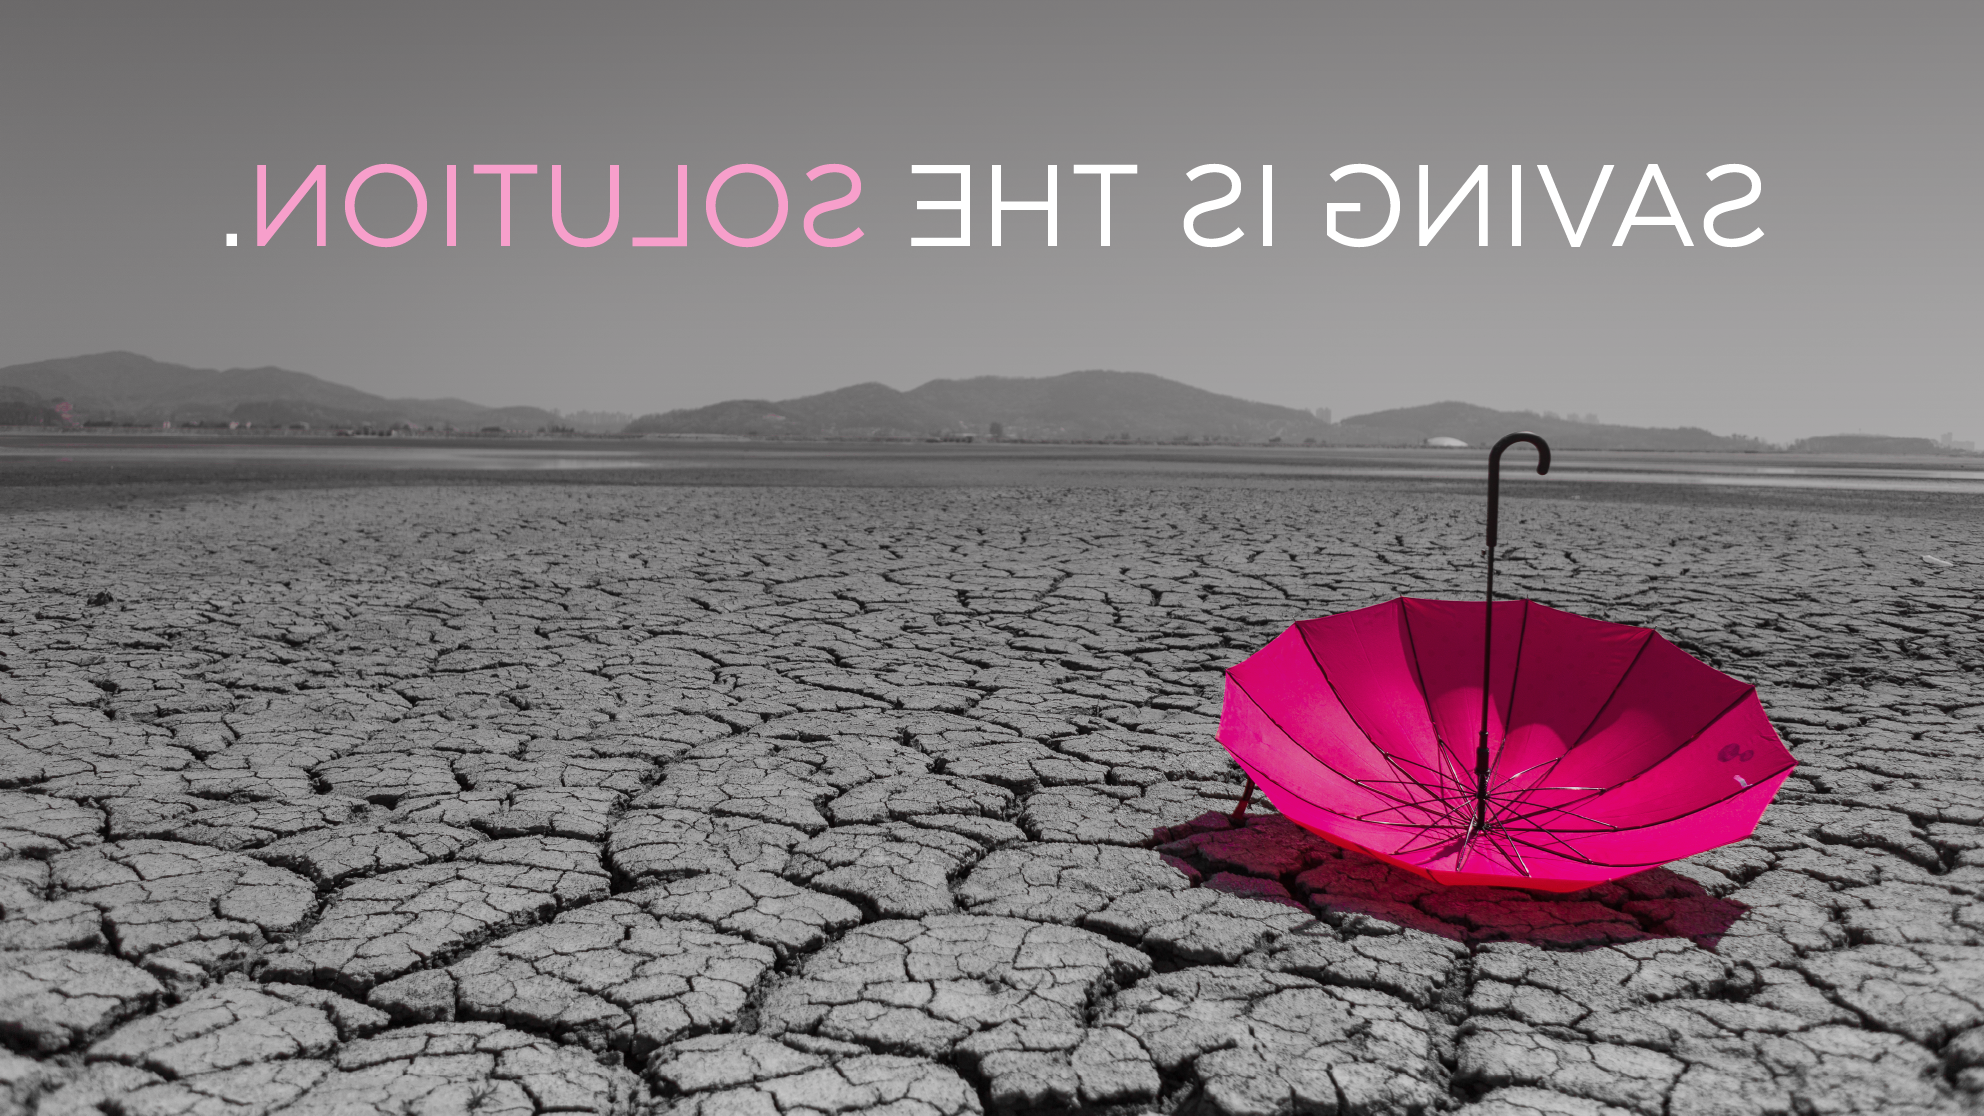 干裂的沙漠和落下的伞. 文字显示“保存是解决方案”